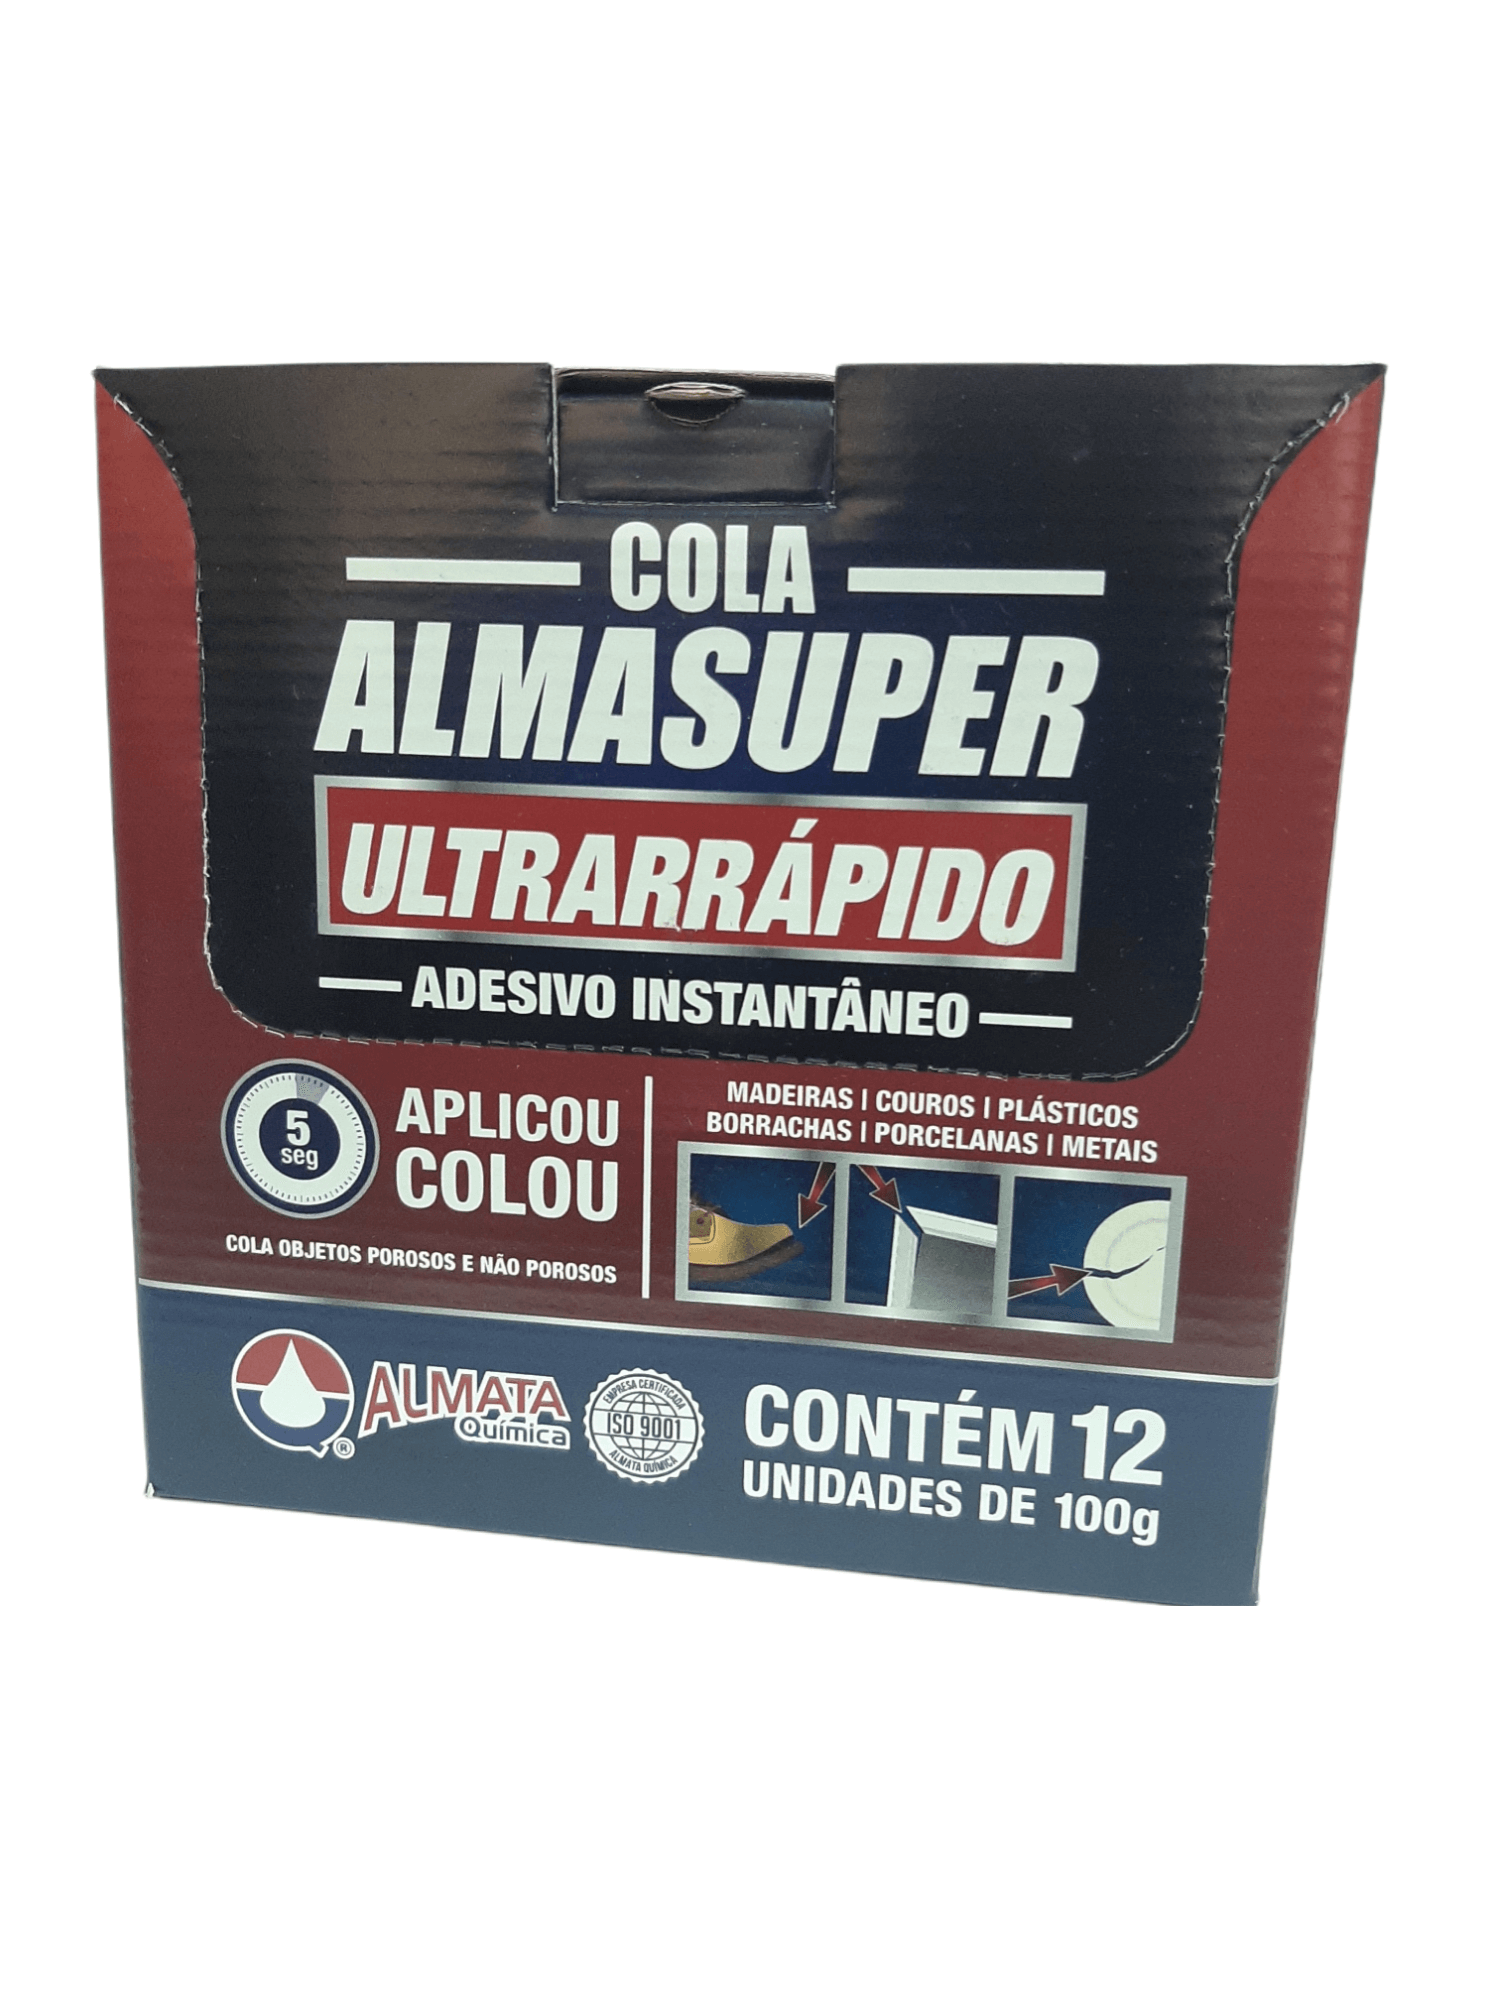 ALMASUPER ULTRARRAPIDO AEP401 100G - 4